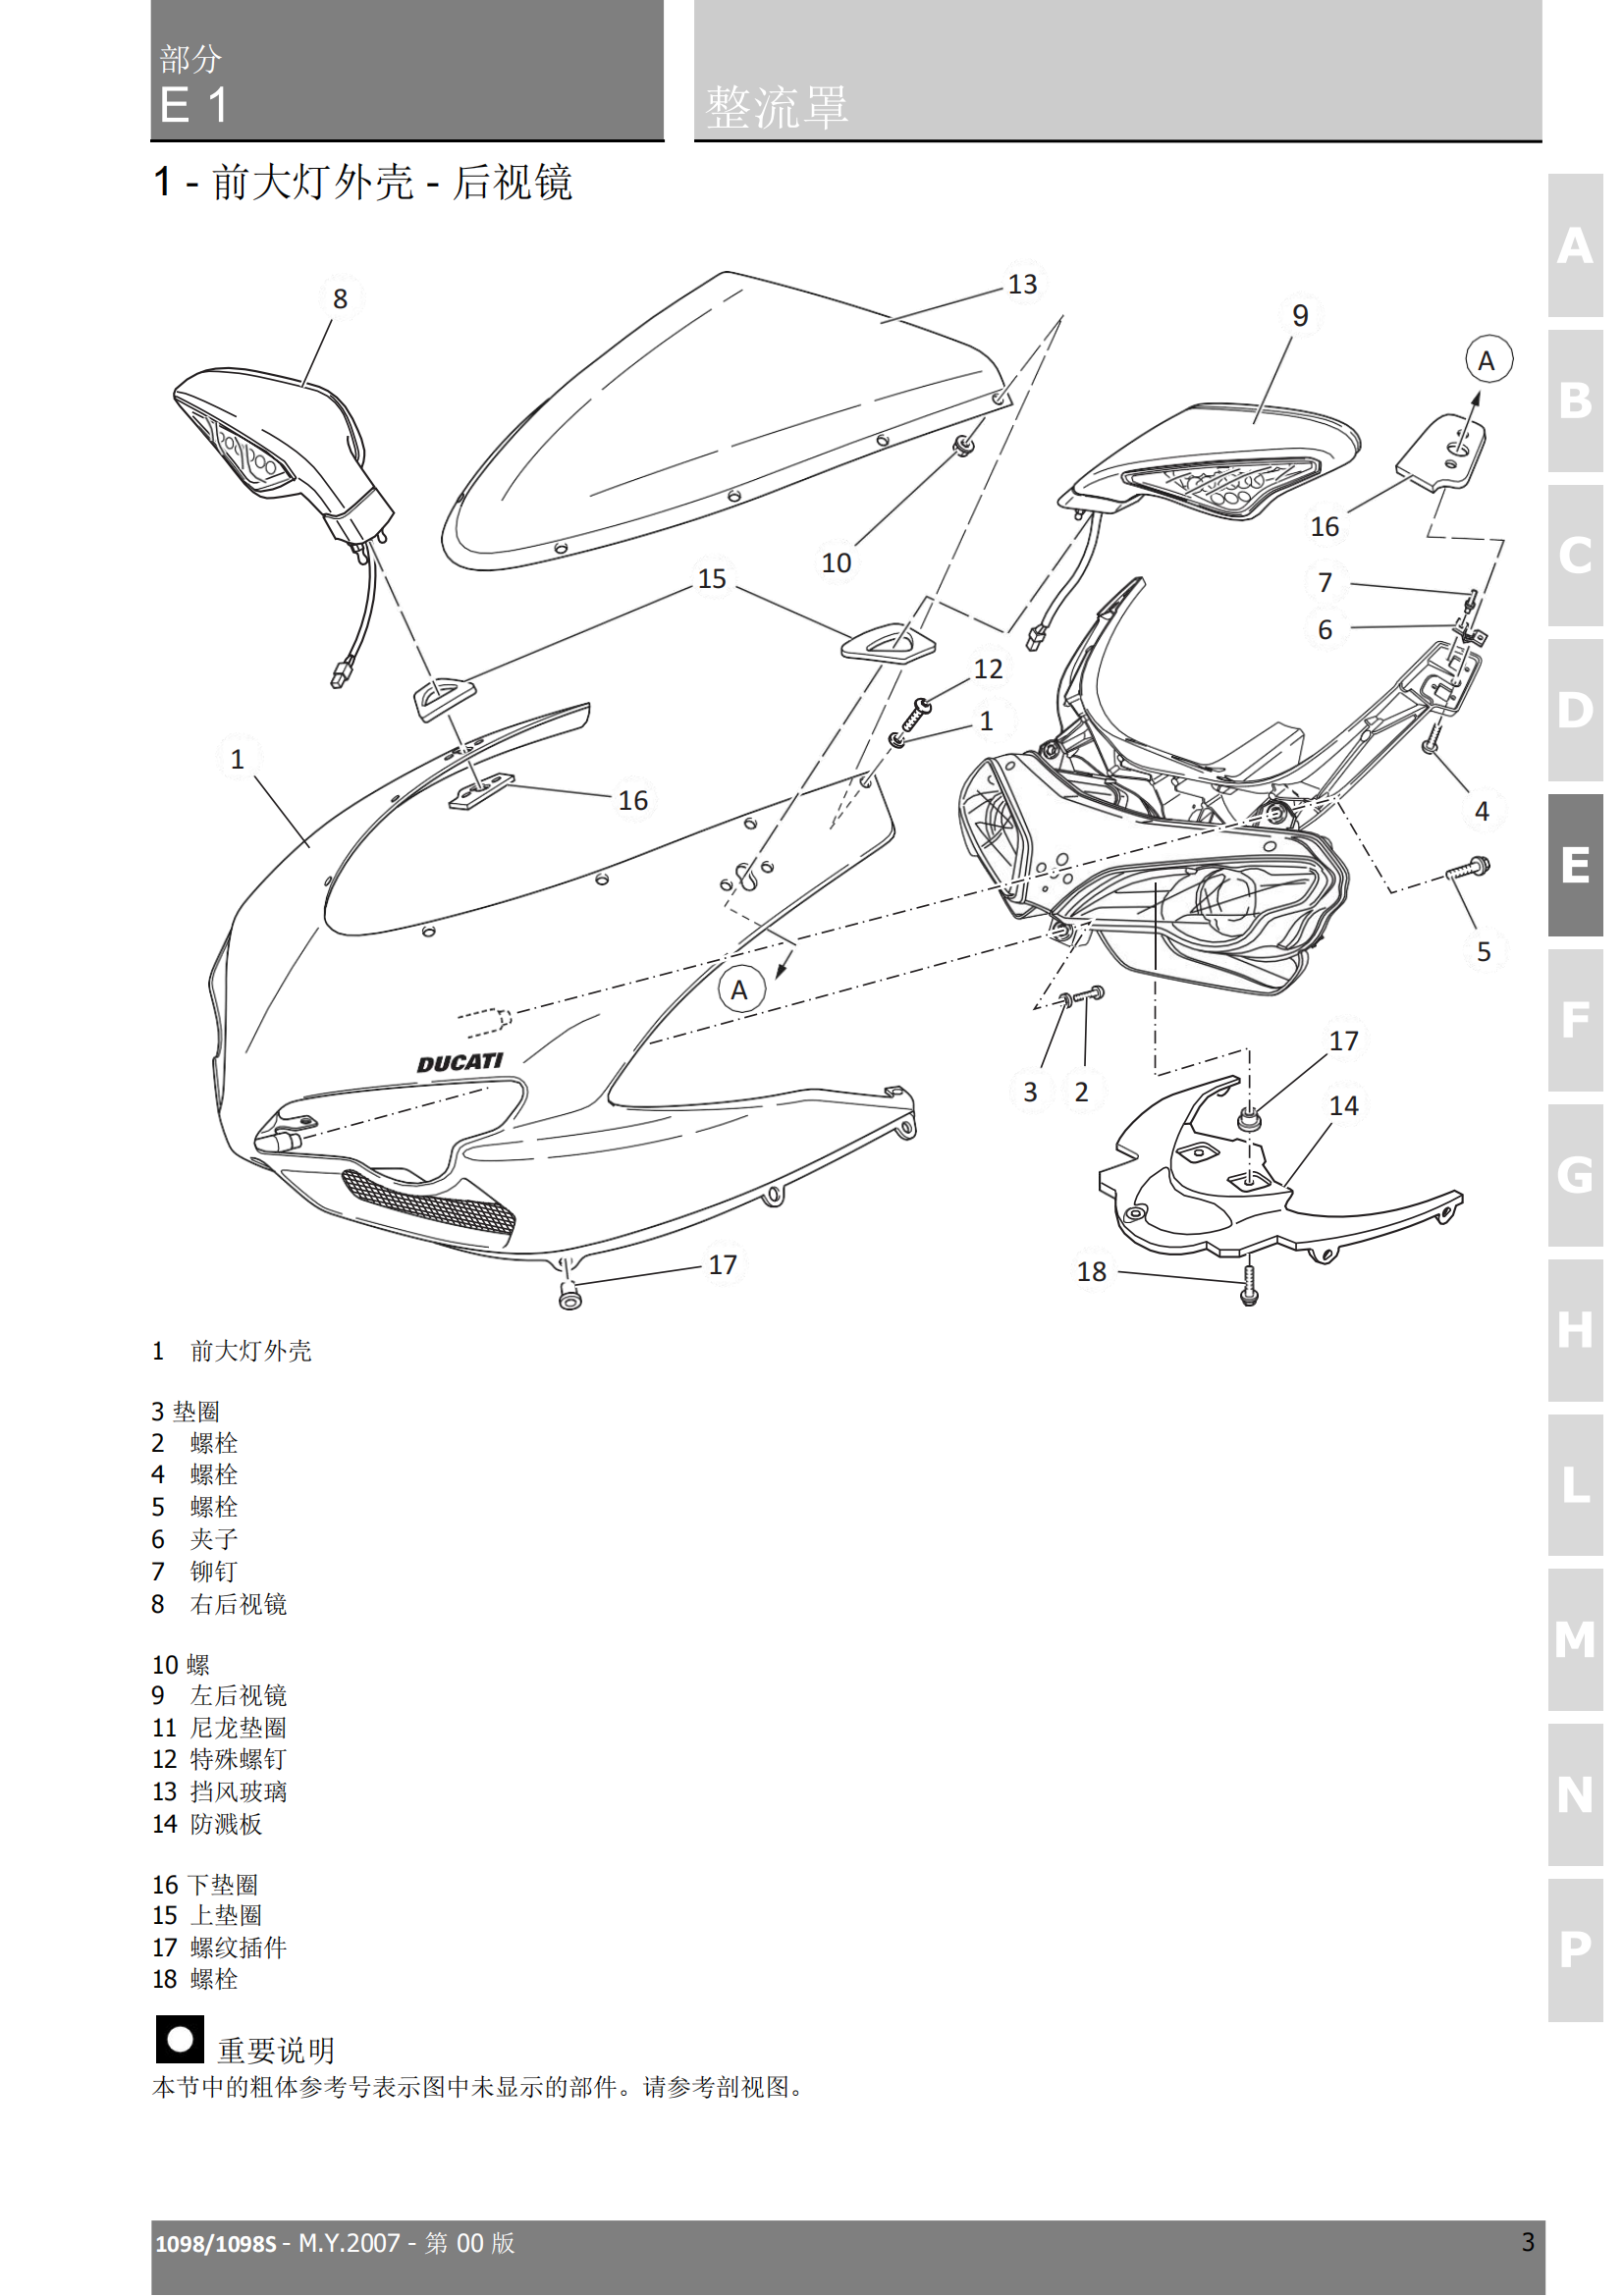 简体中文杜卡迪1098 Ducati 1098 维修手册插图1